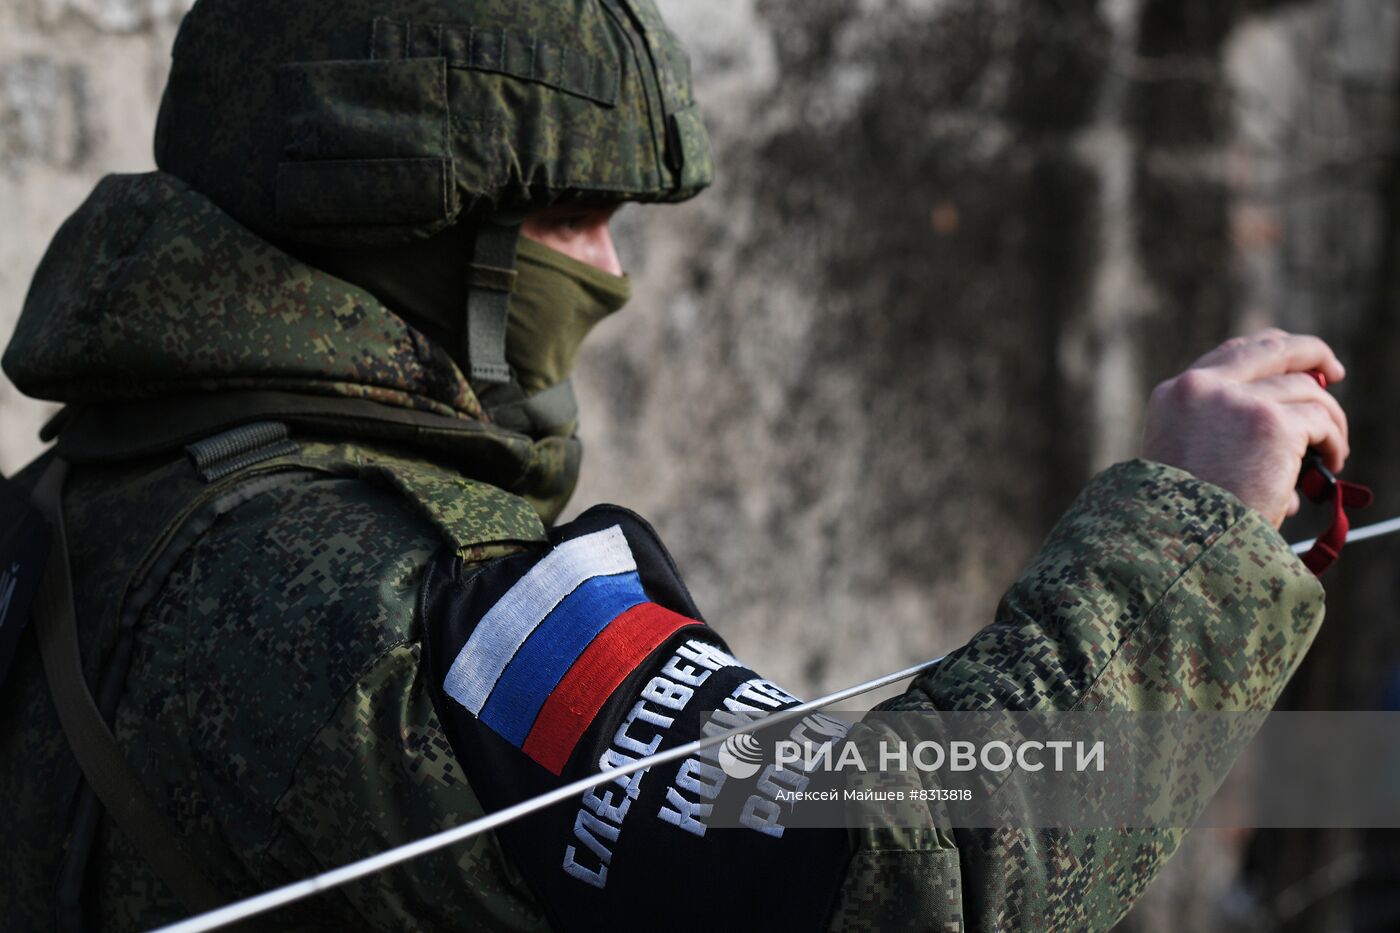 Работа сотрудников СК РФ на месте обстрела в Донецке